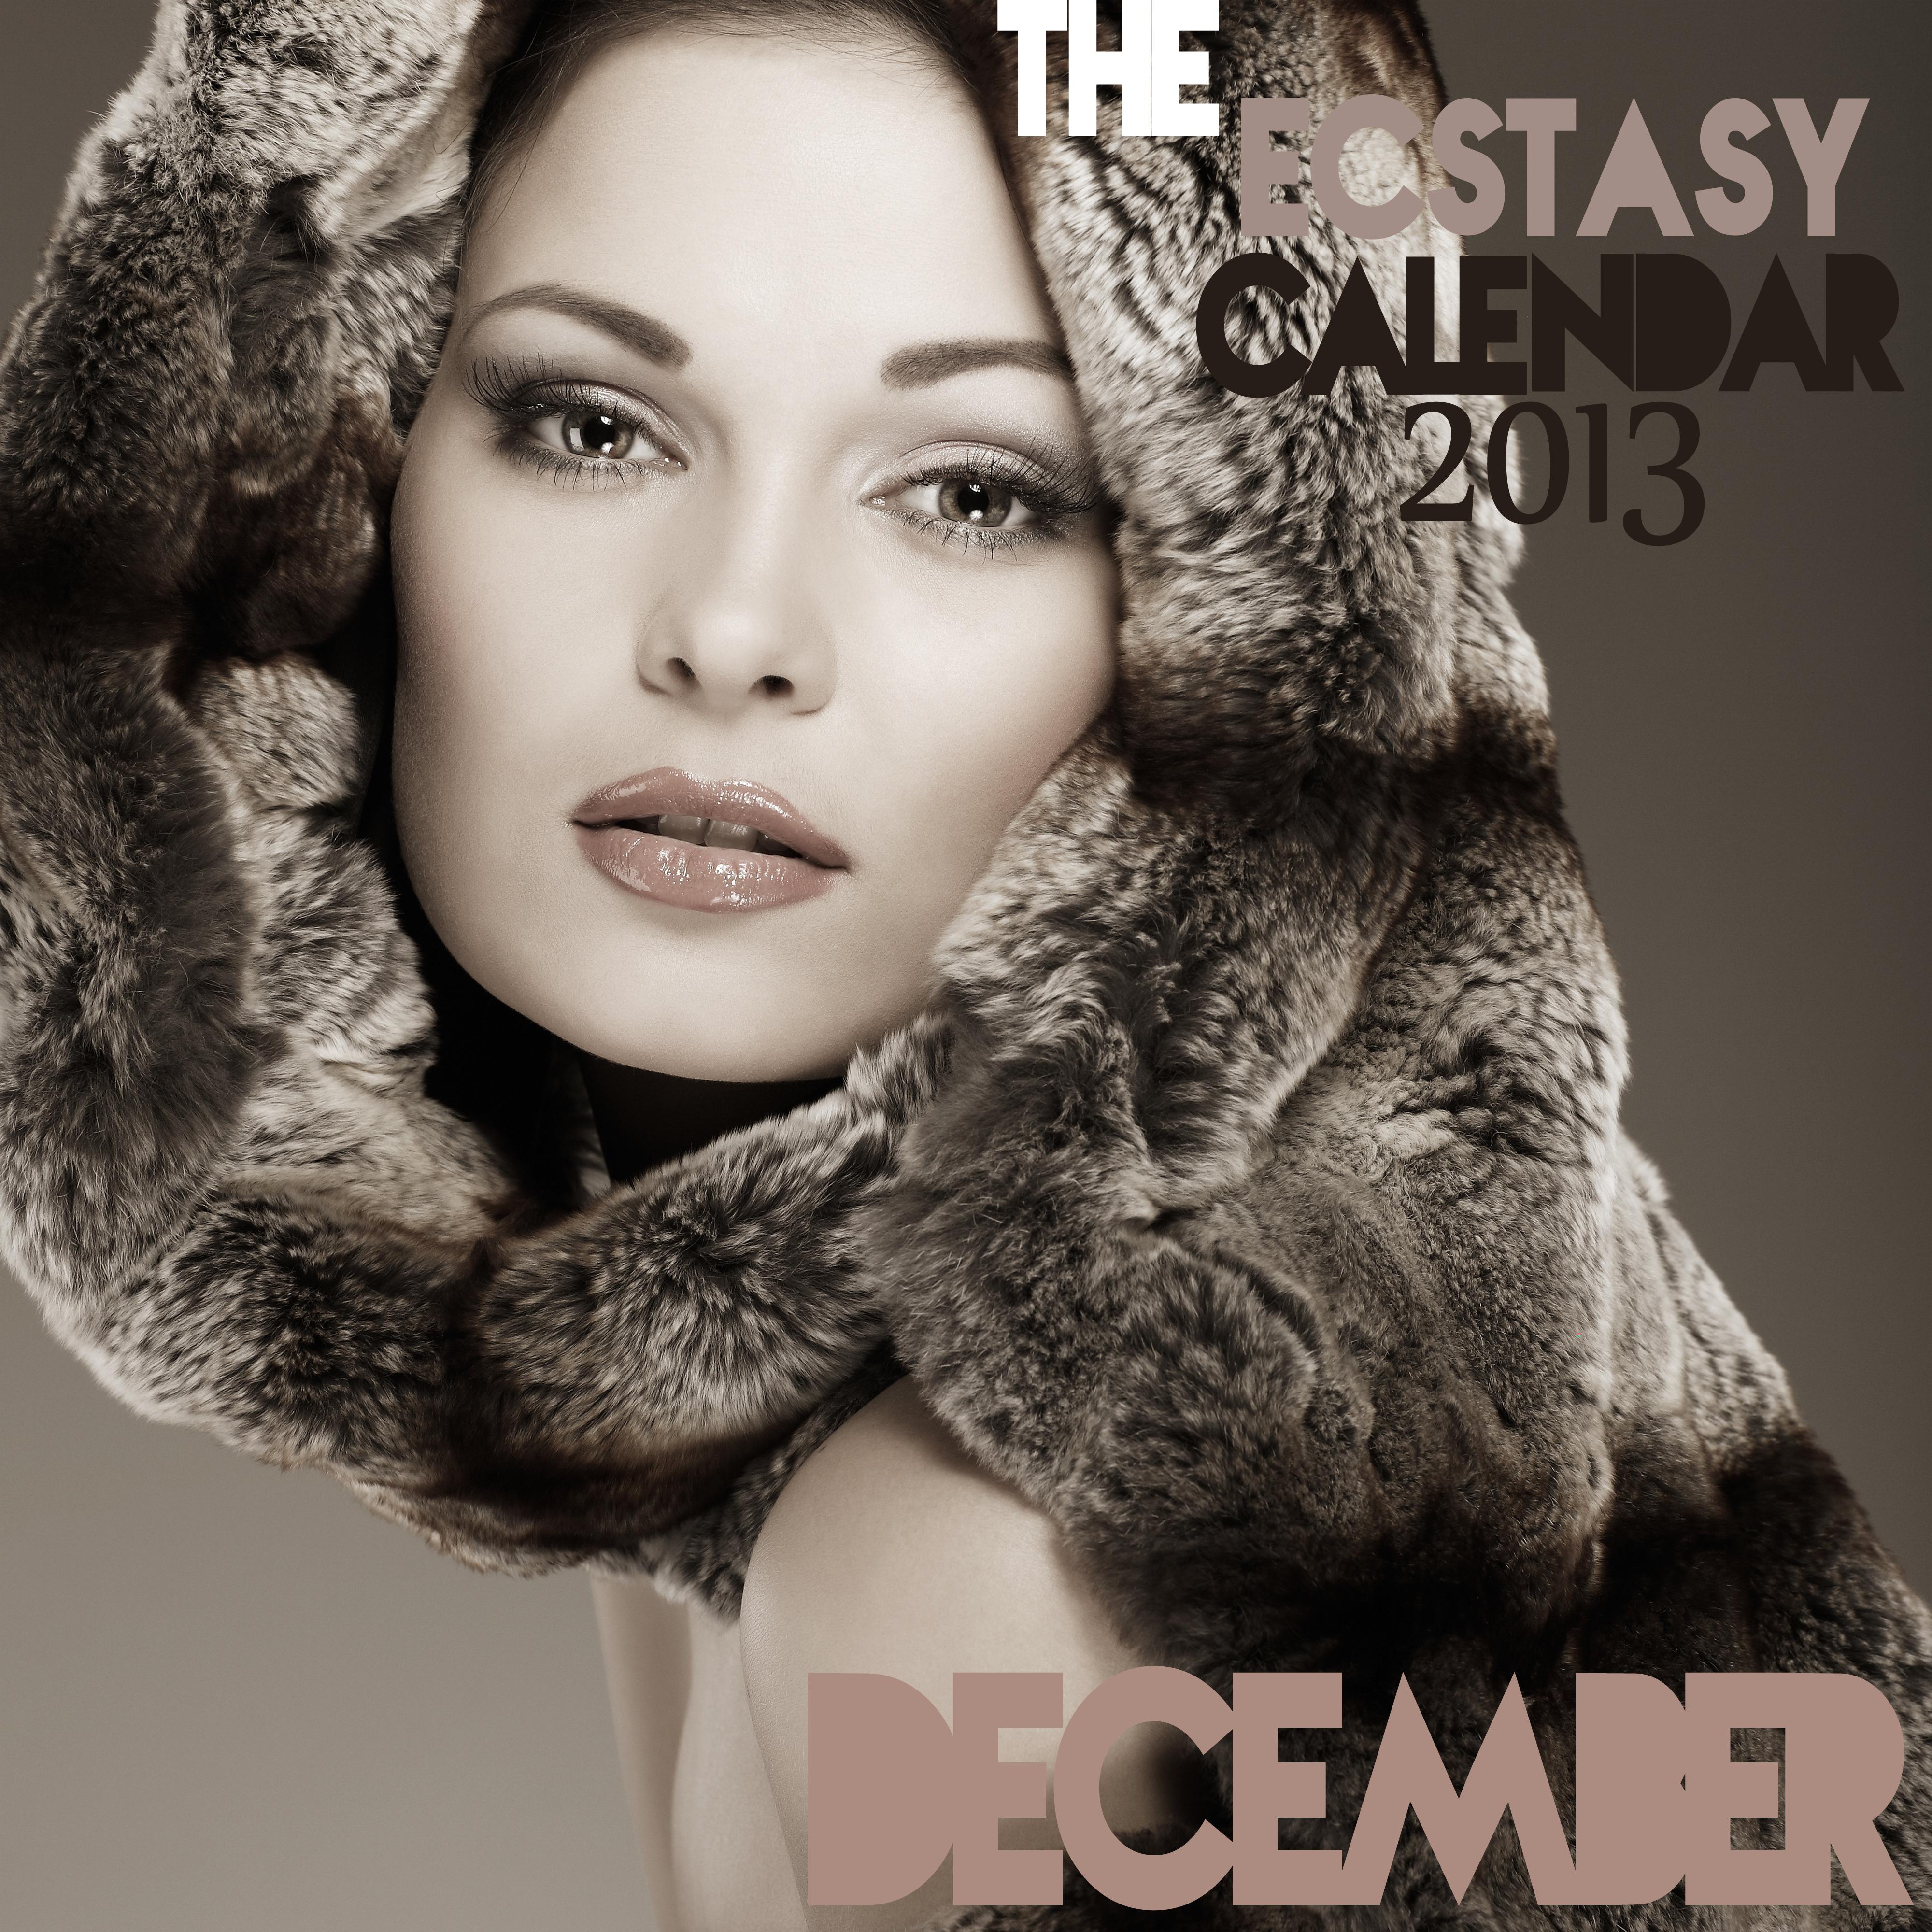 The Ecstasy Calendar 2013: December